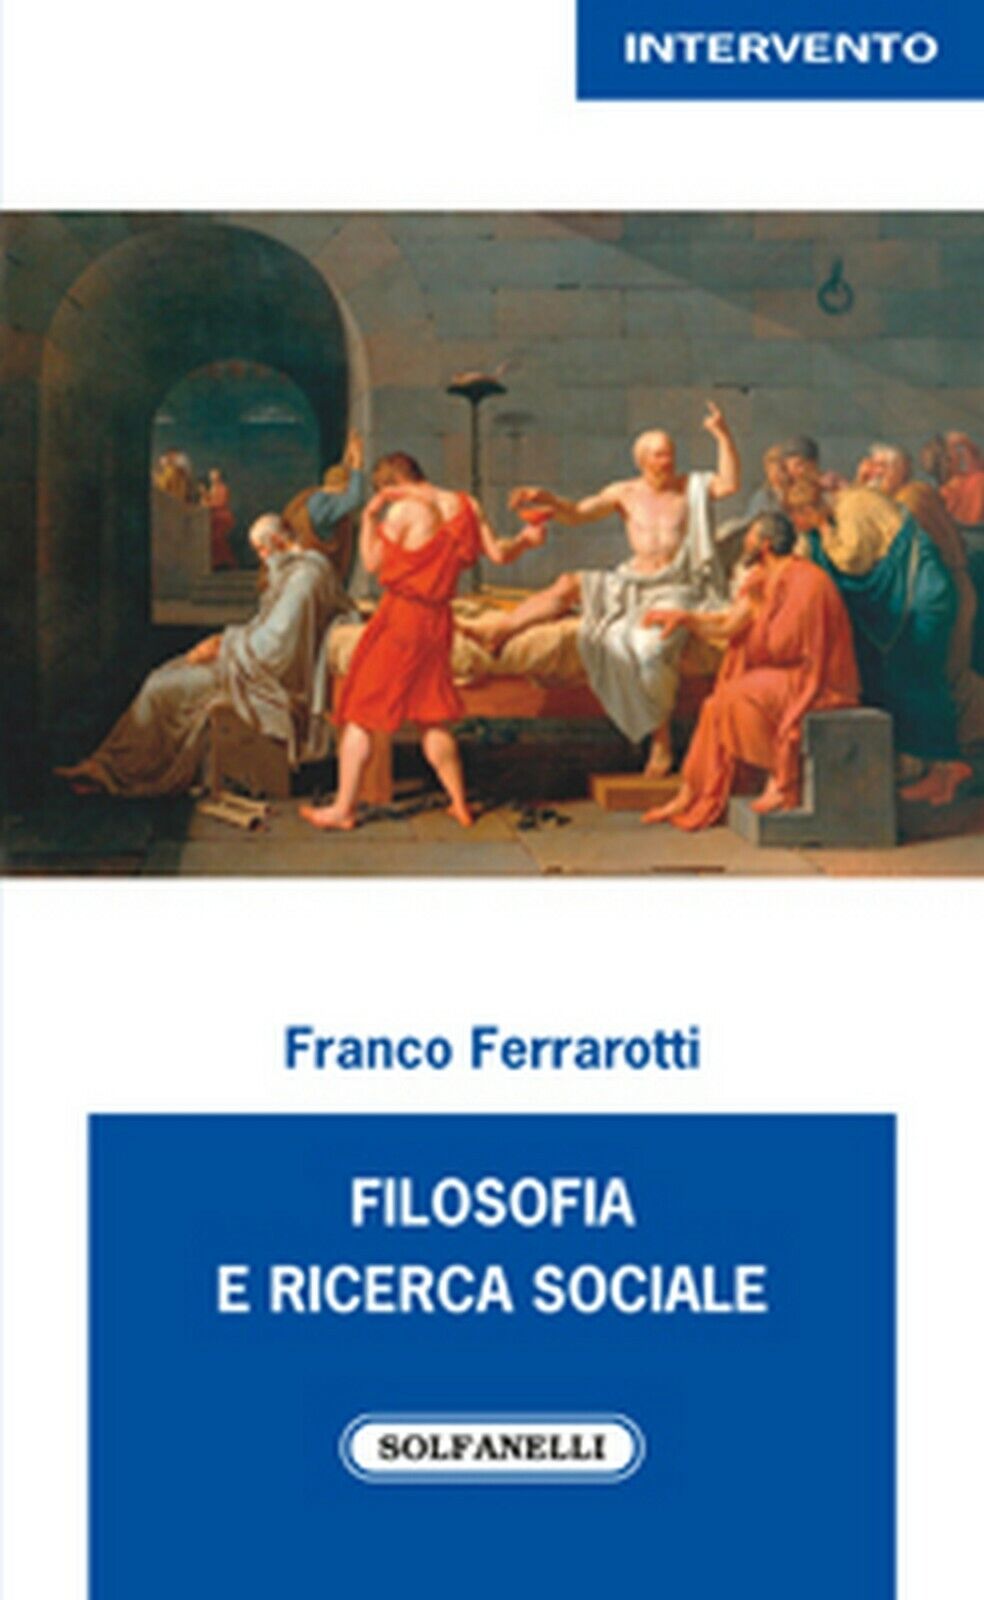 FILOSOFIA E RICERCA SOCIALE  di Franco Ferrarotti,  Solfanelli Edizioni